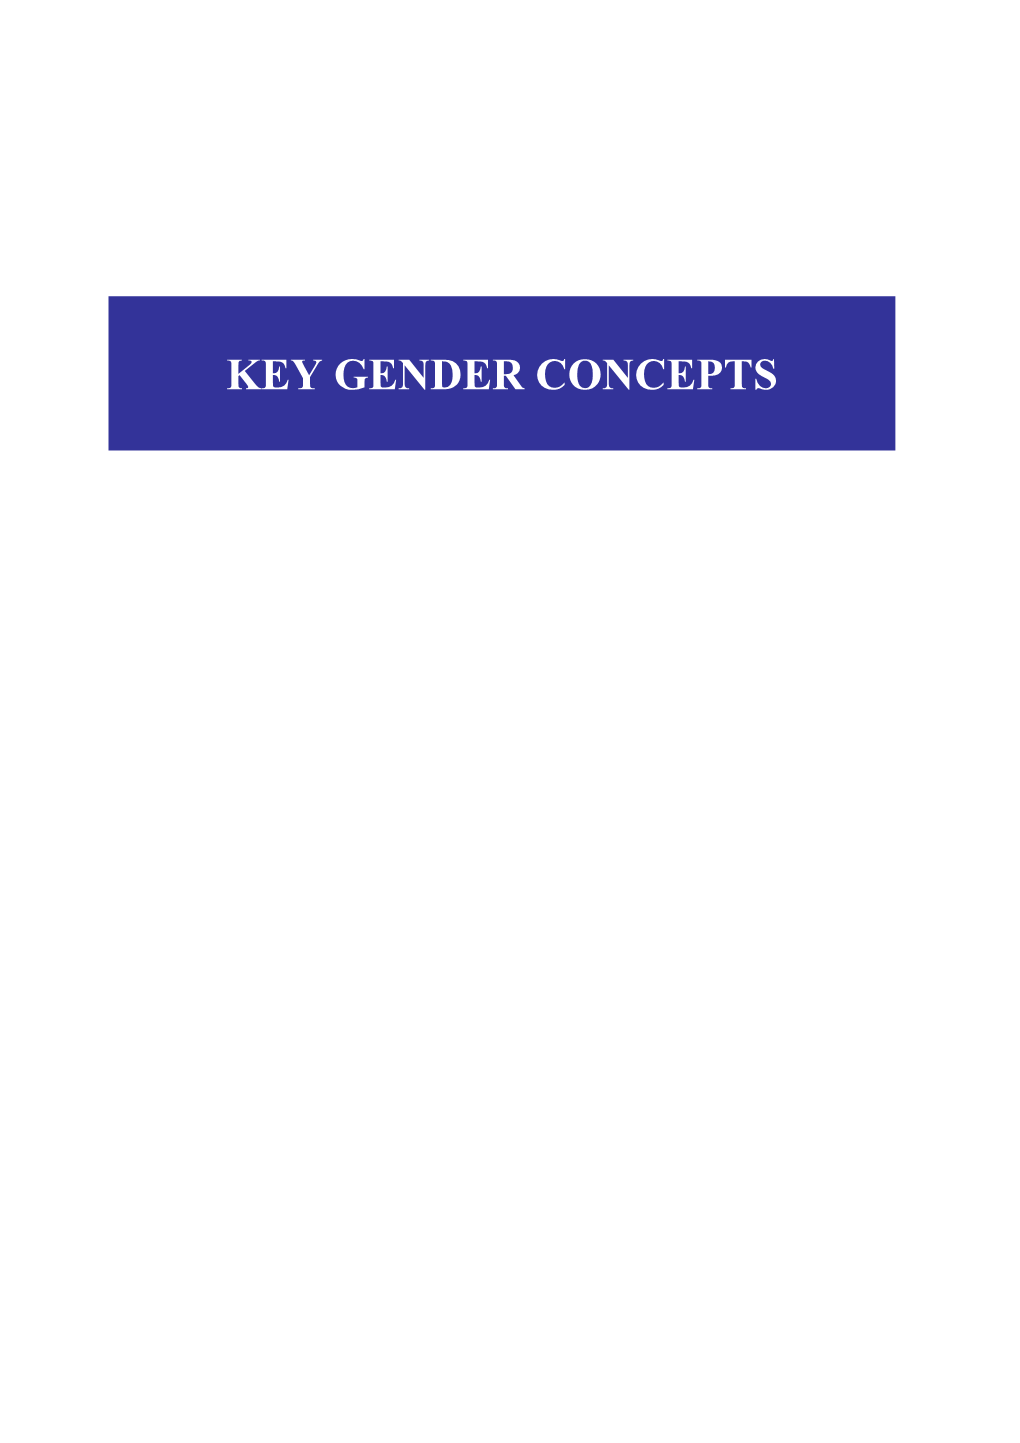 1. Key Gender Concepts Facilitator Materials 51